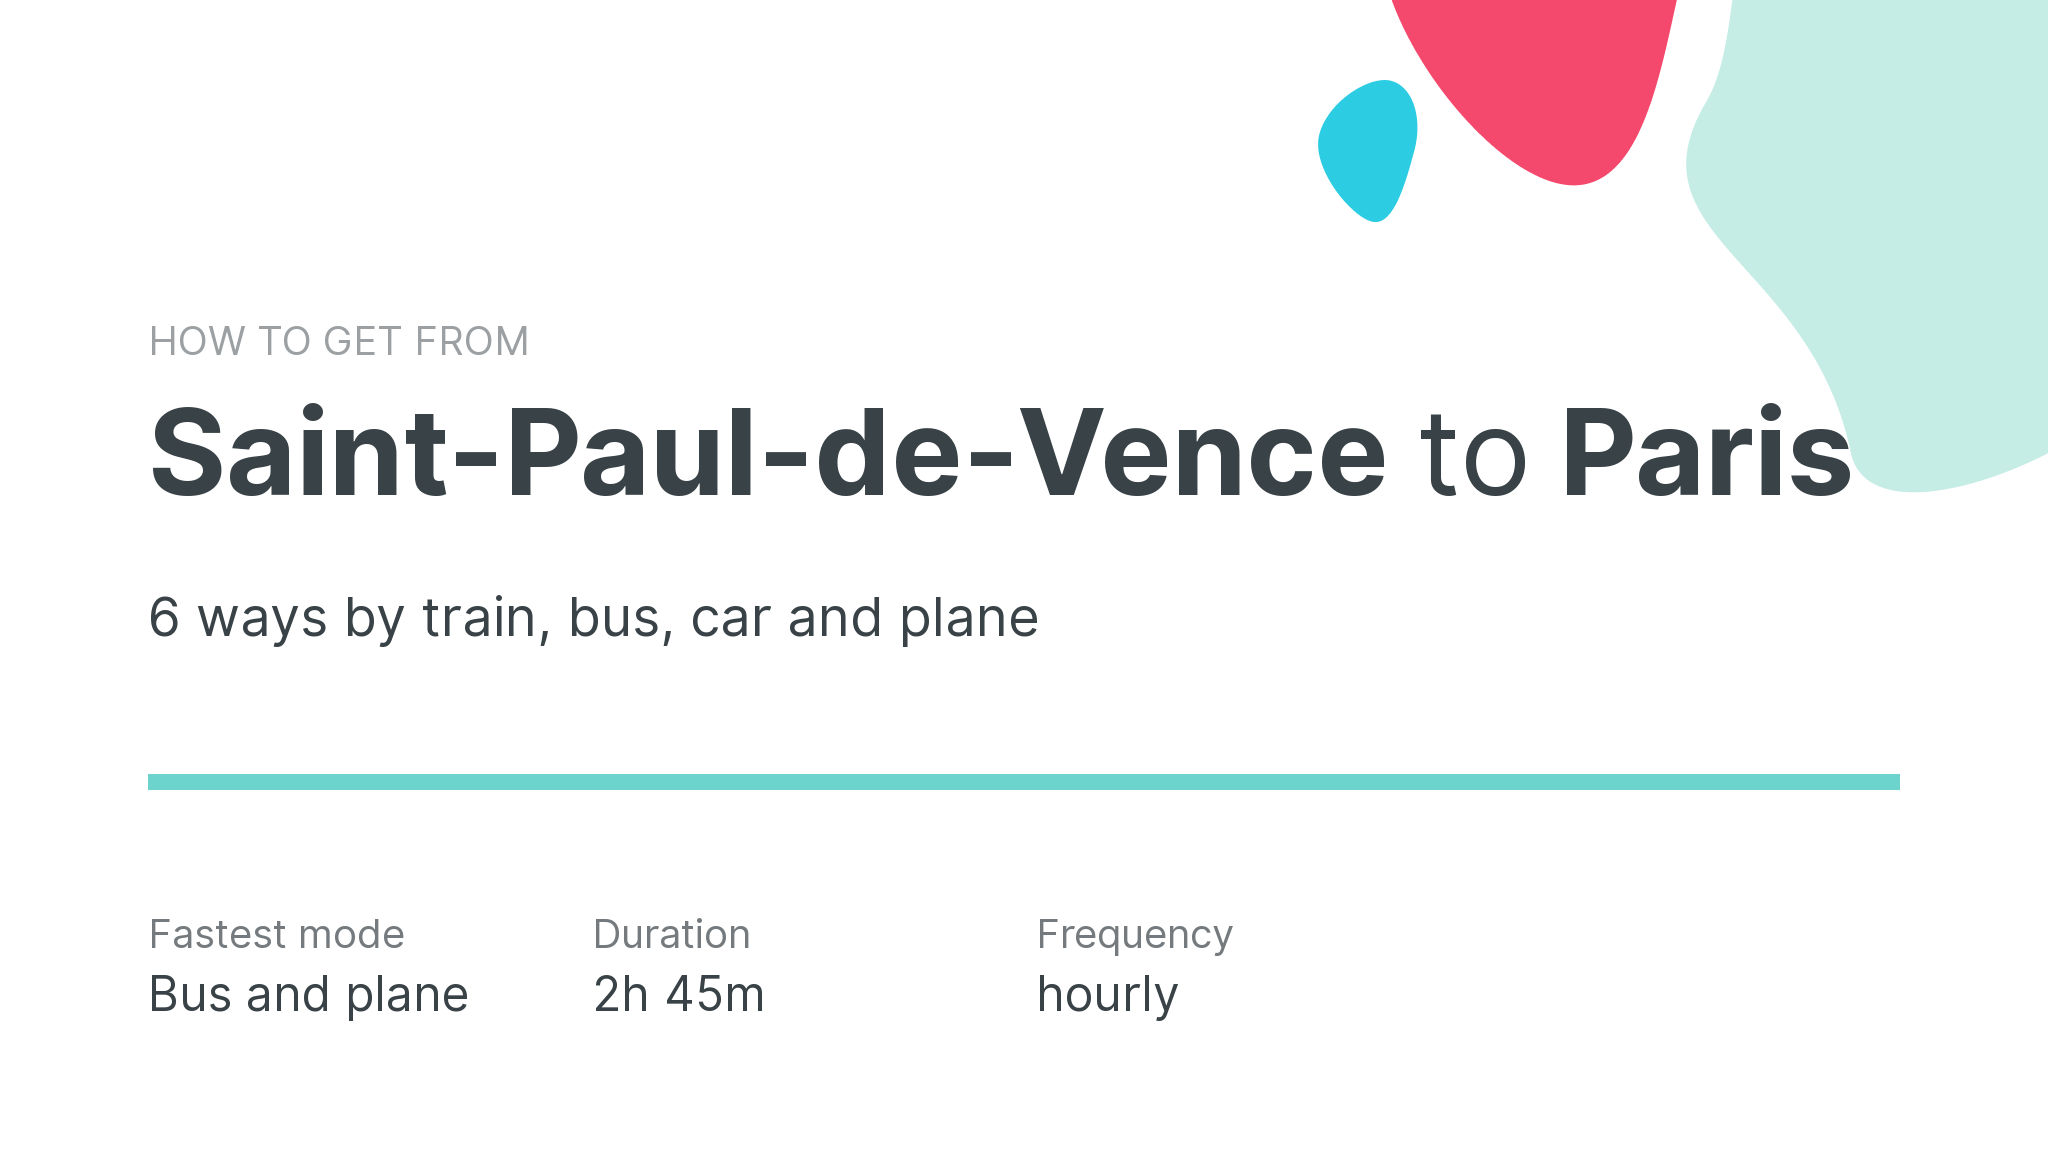 How do I get from Saint-Paul-de-Vence to Paris